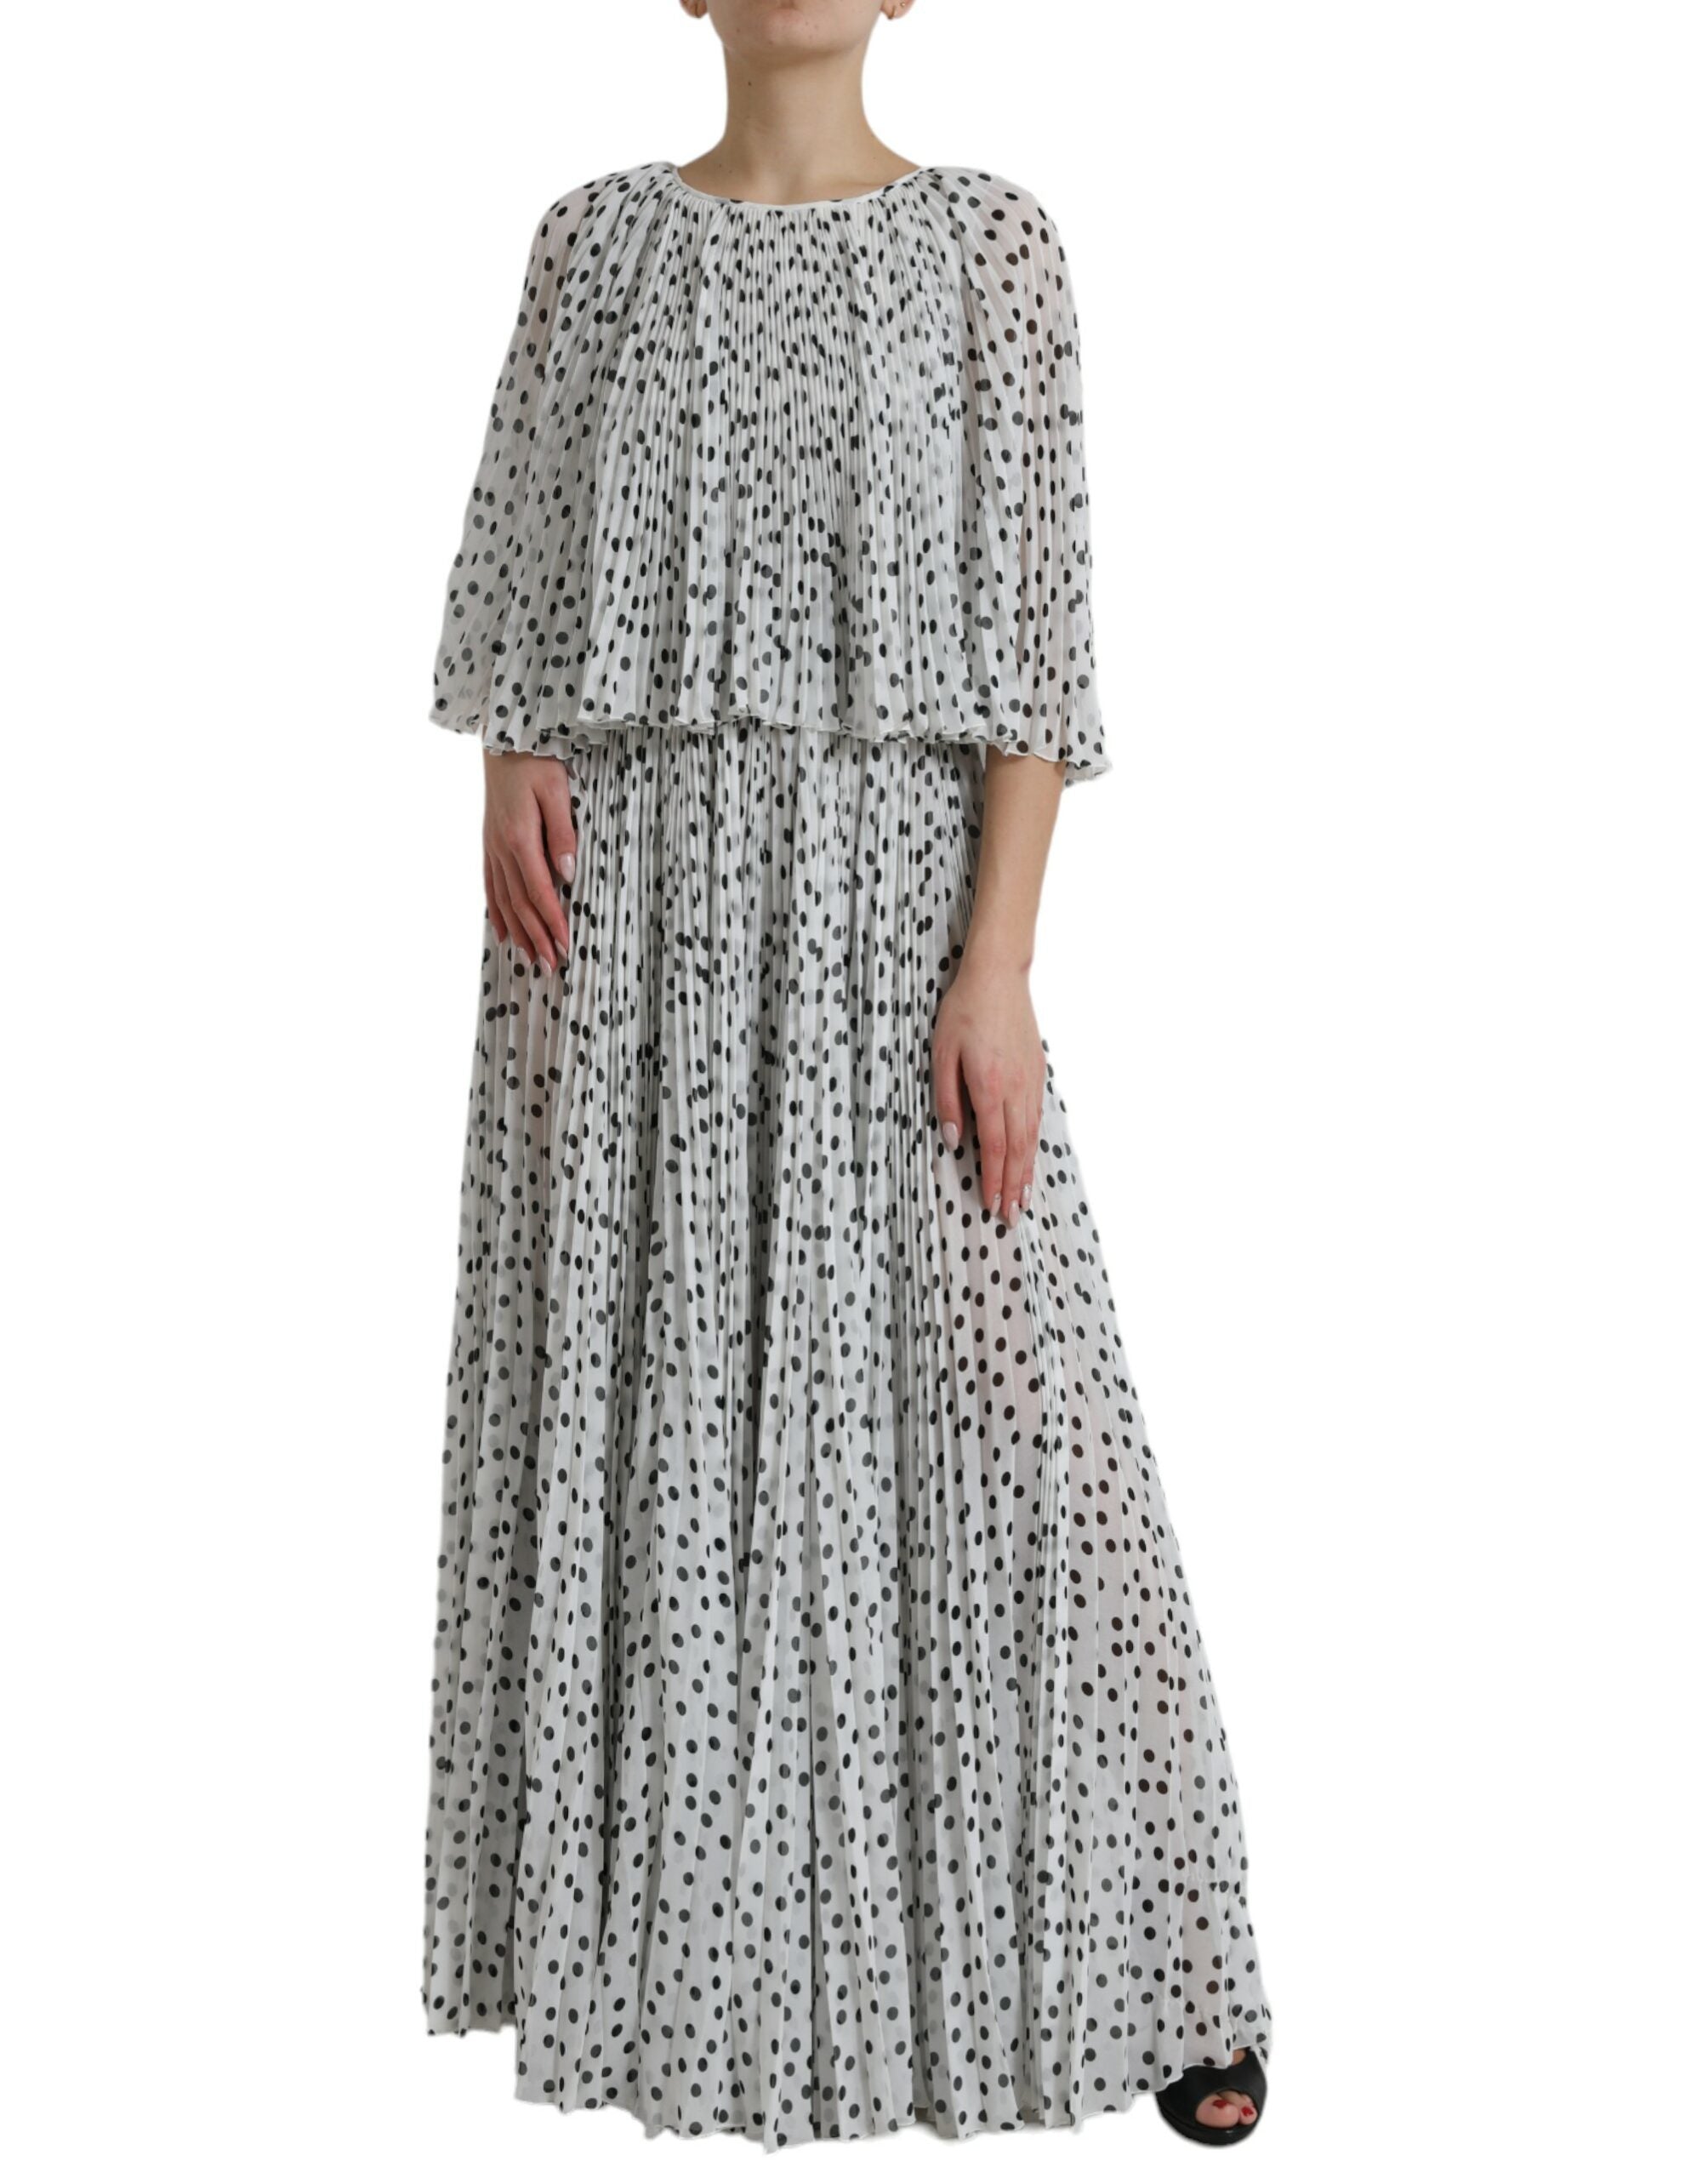 Elegant Polka Dots Maxi Dress